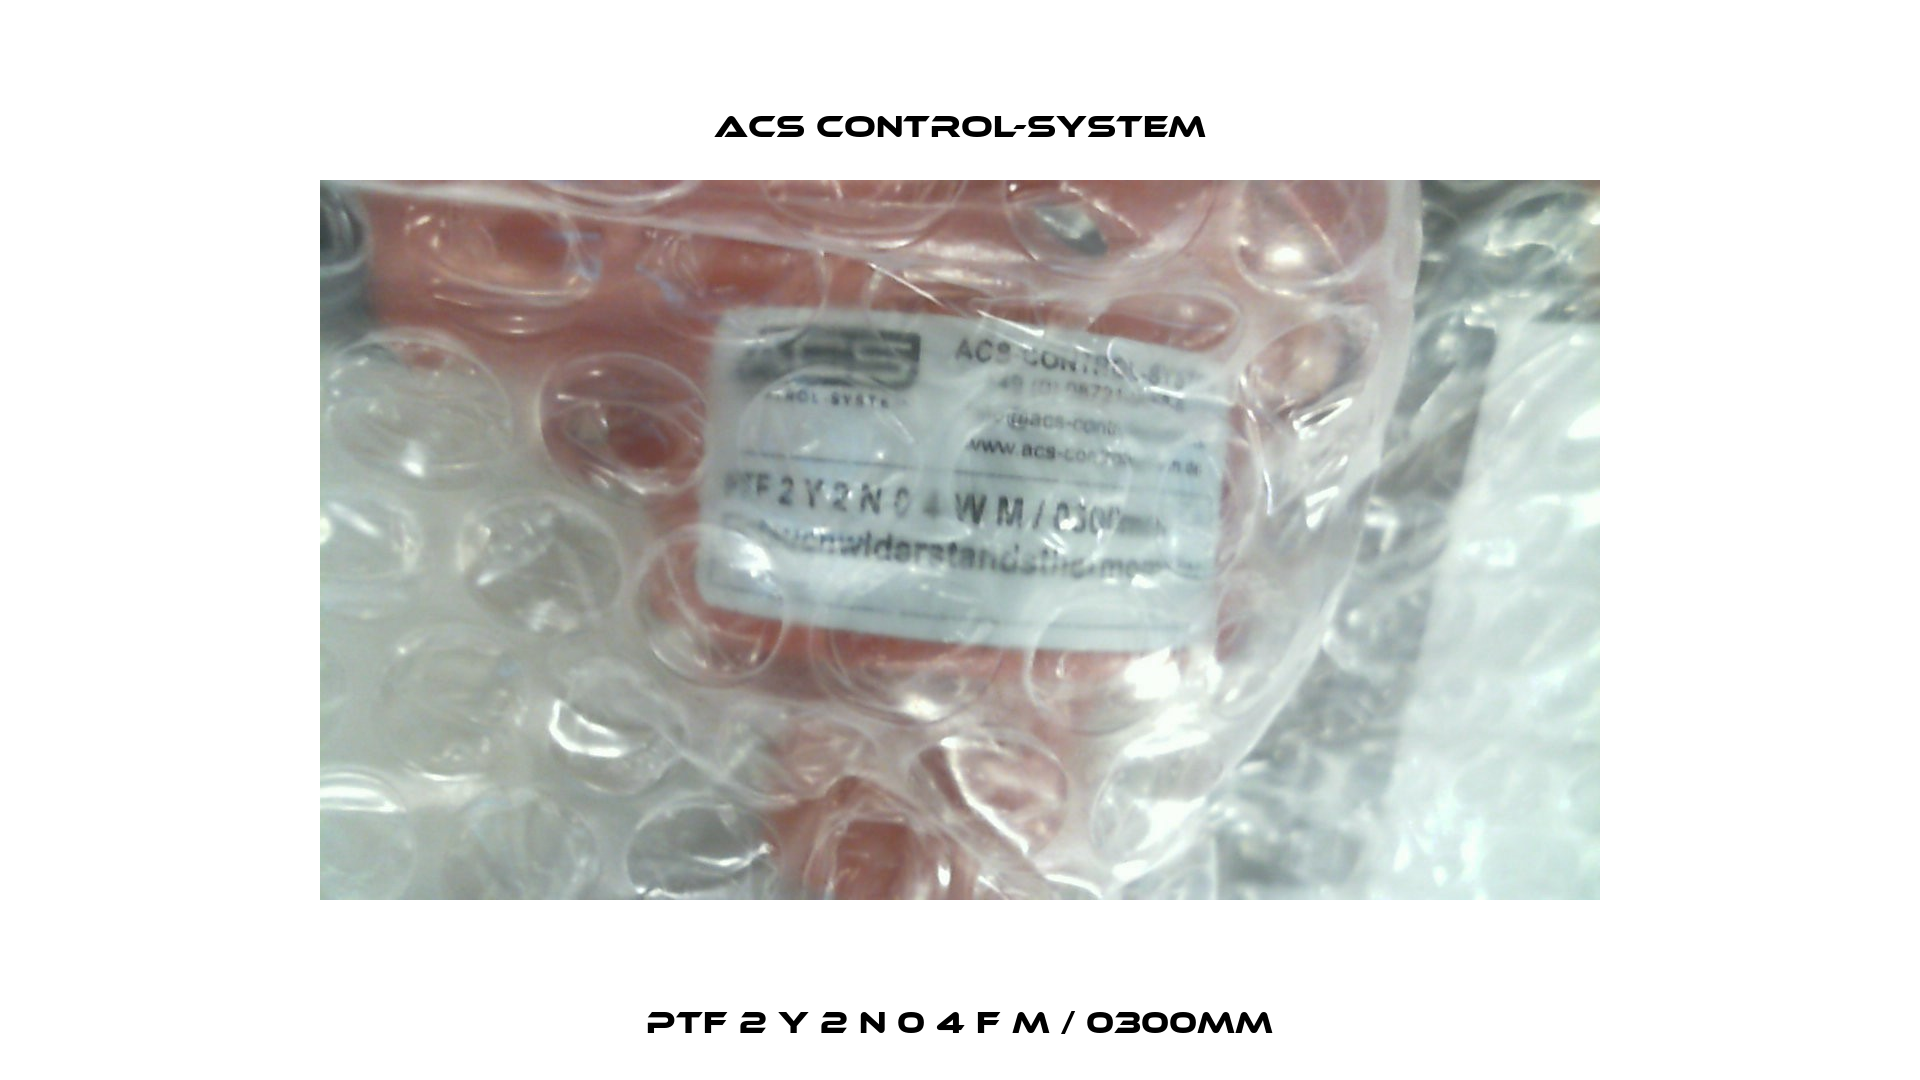 PTF 2 Y 2 N 0 4 F M / 0300mm Acs Control-System